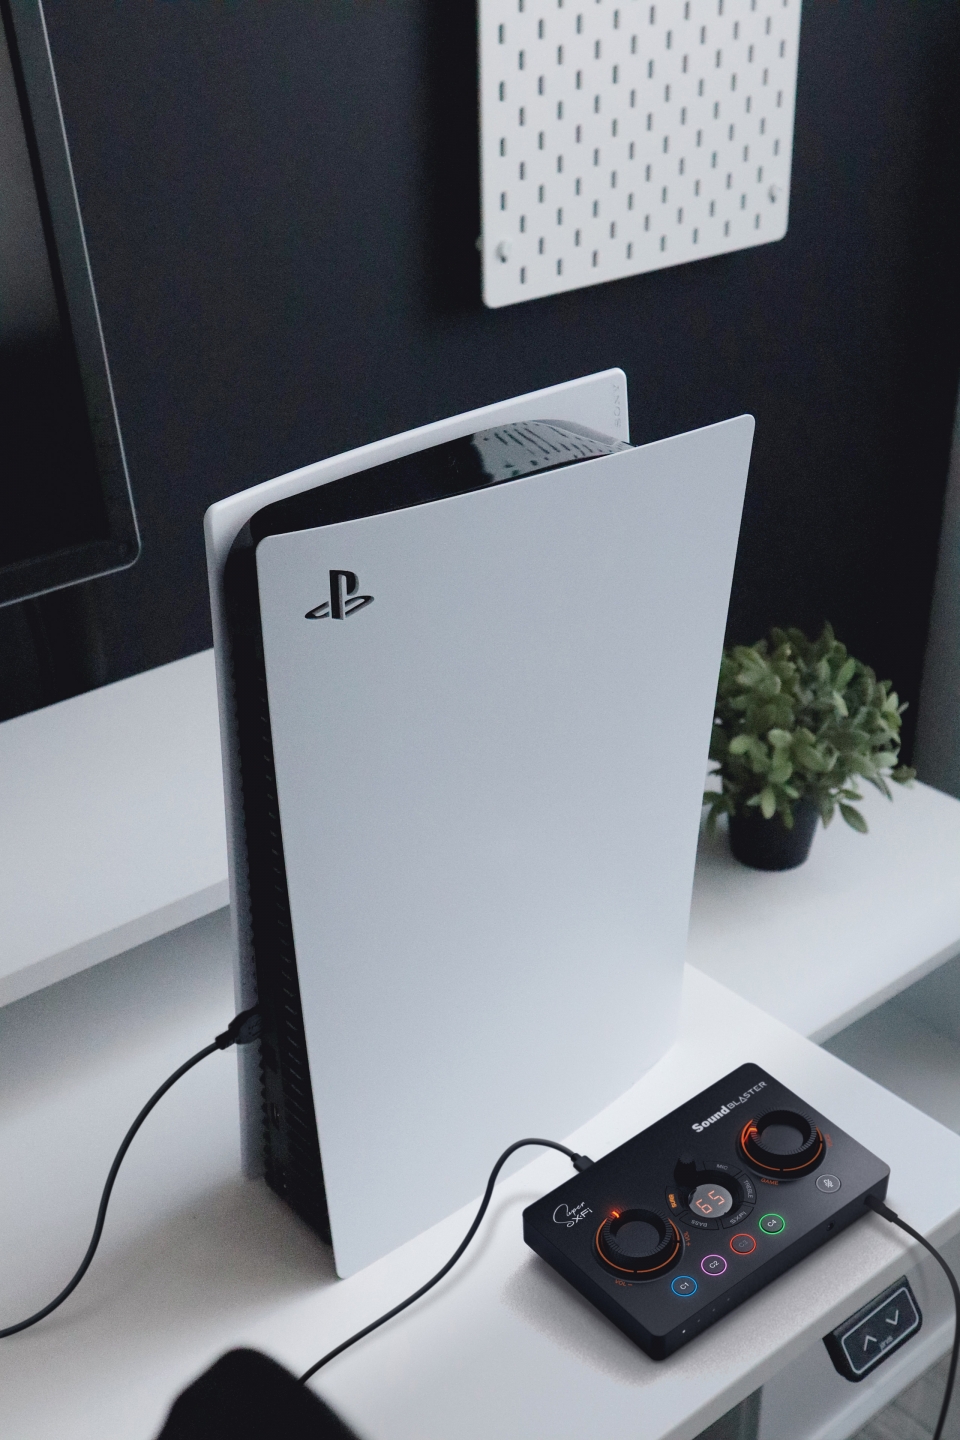 PS5와 연결해 최신 게임 속 사운드를 더 박진감 있게 즐길 수 있다.